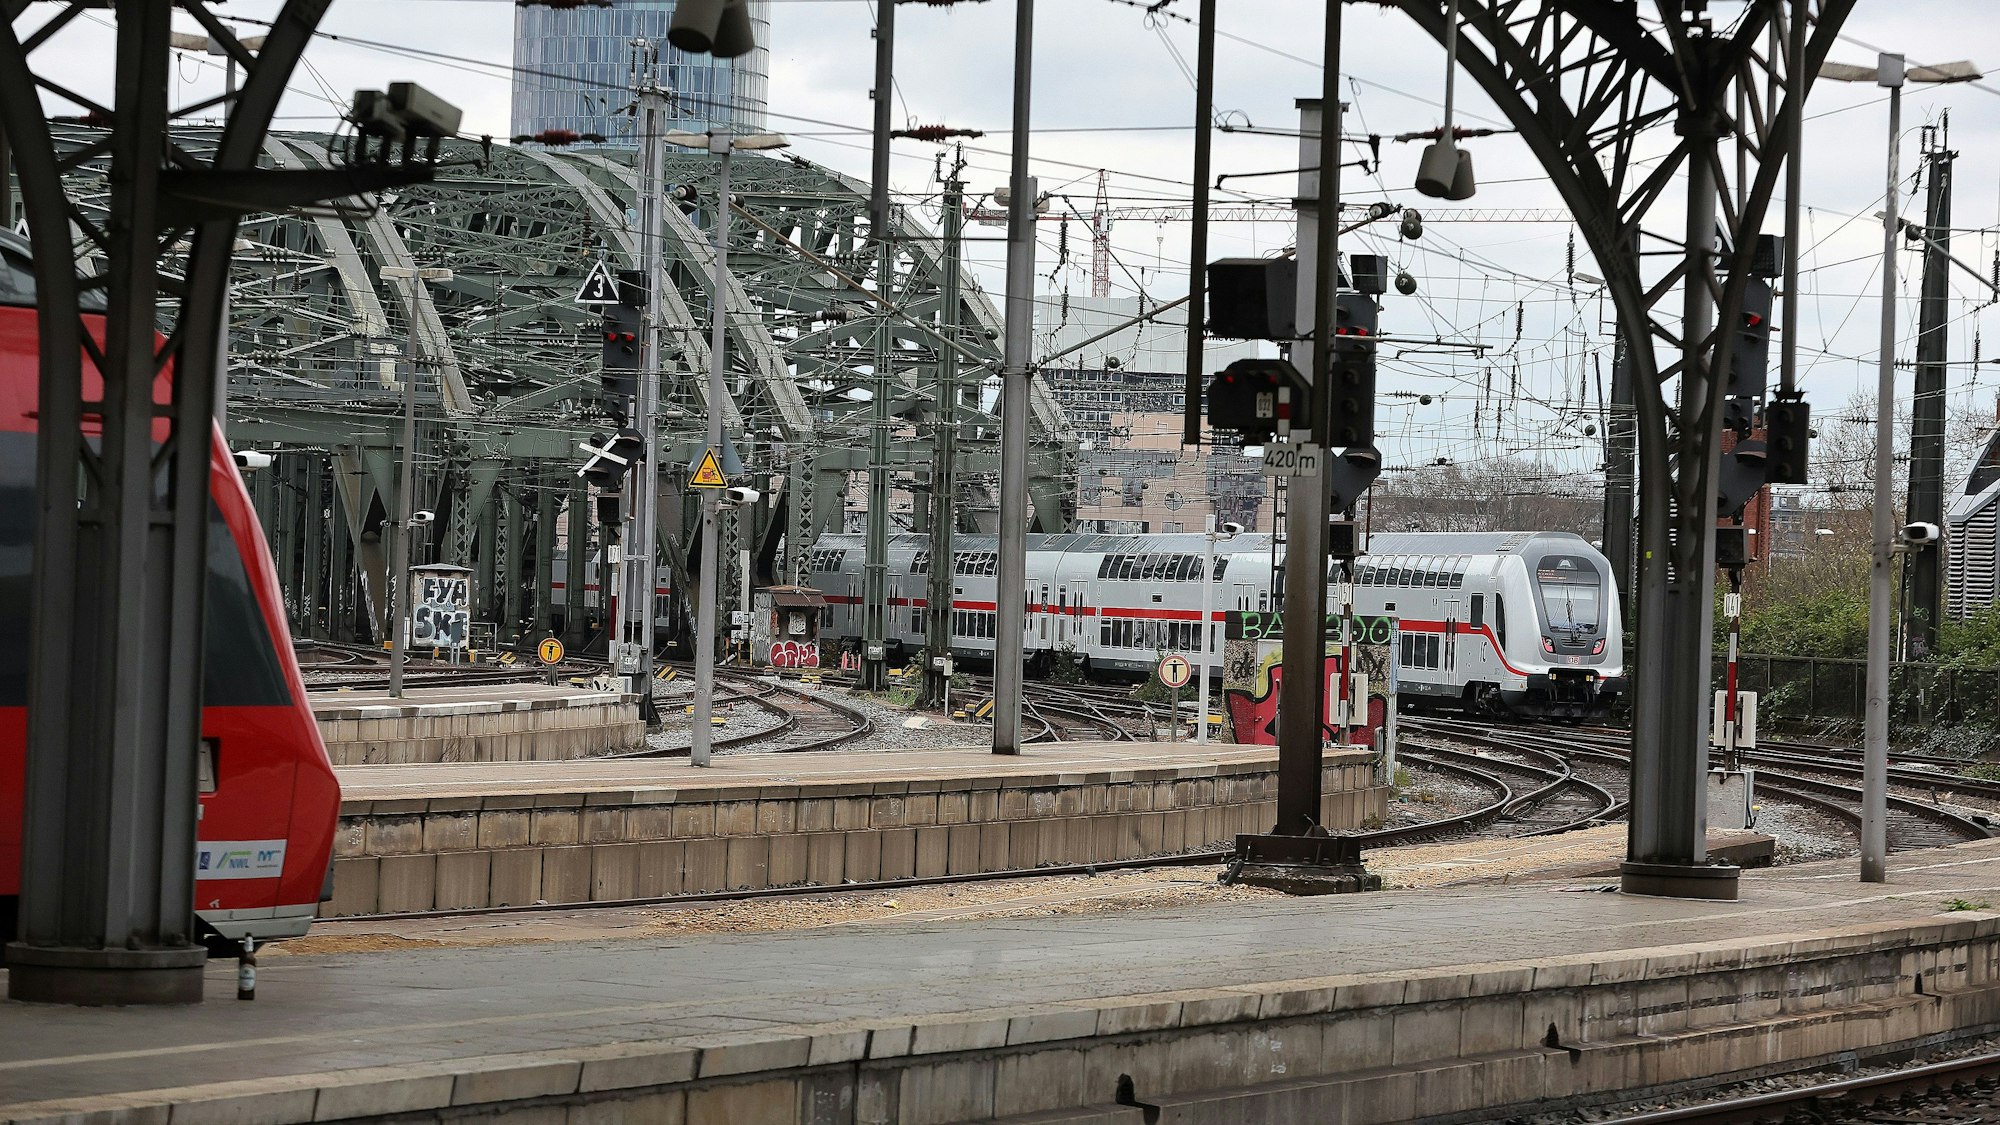 Hauptbahnhof Köln, ausfahrender Zug Richtung Hohenzollernbrücke, 01.04.2022, Bild: Herbert Bucco

